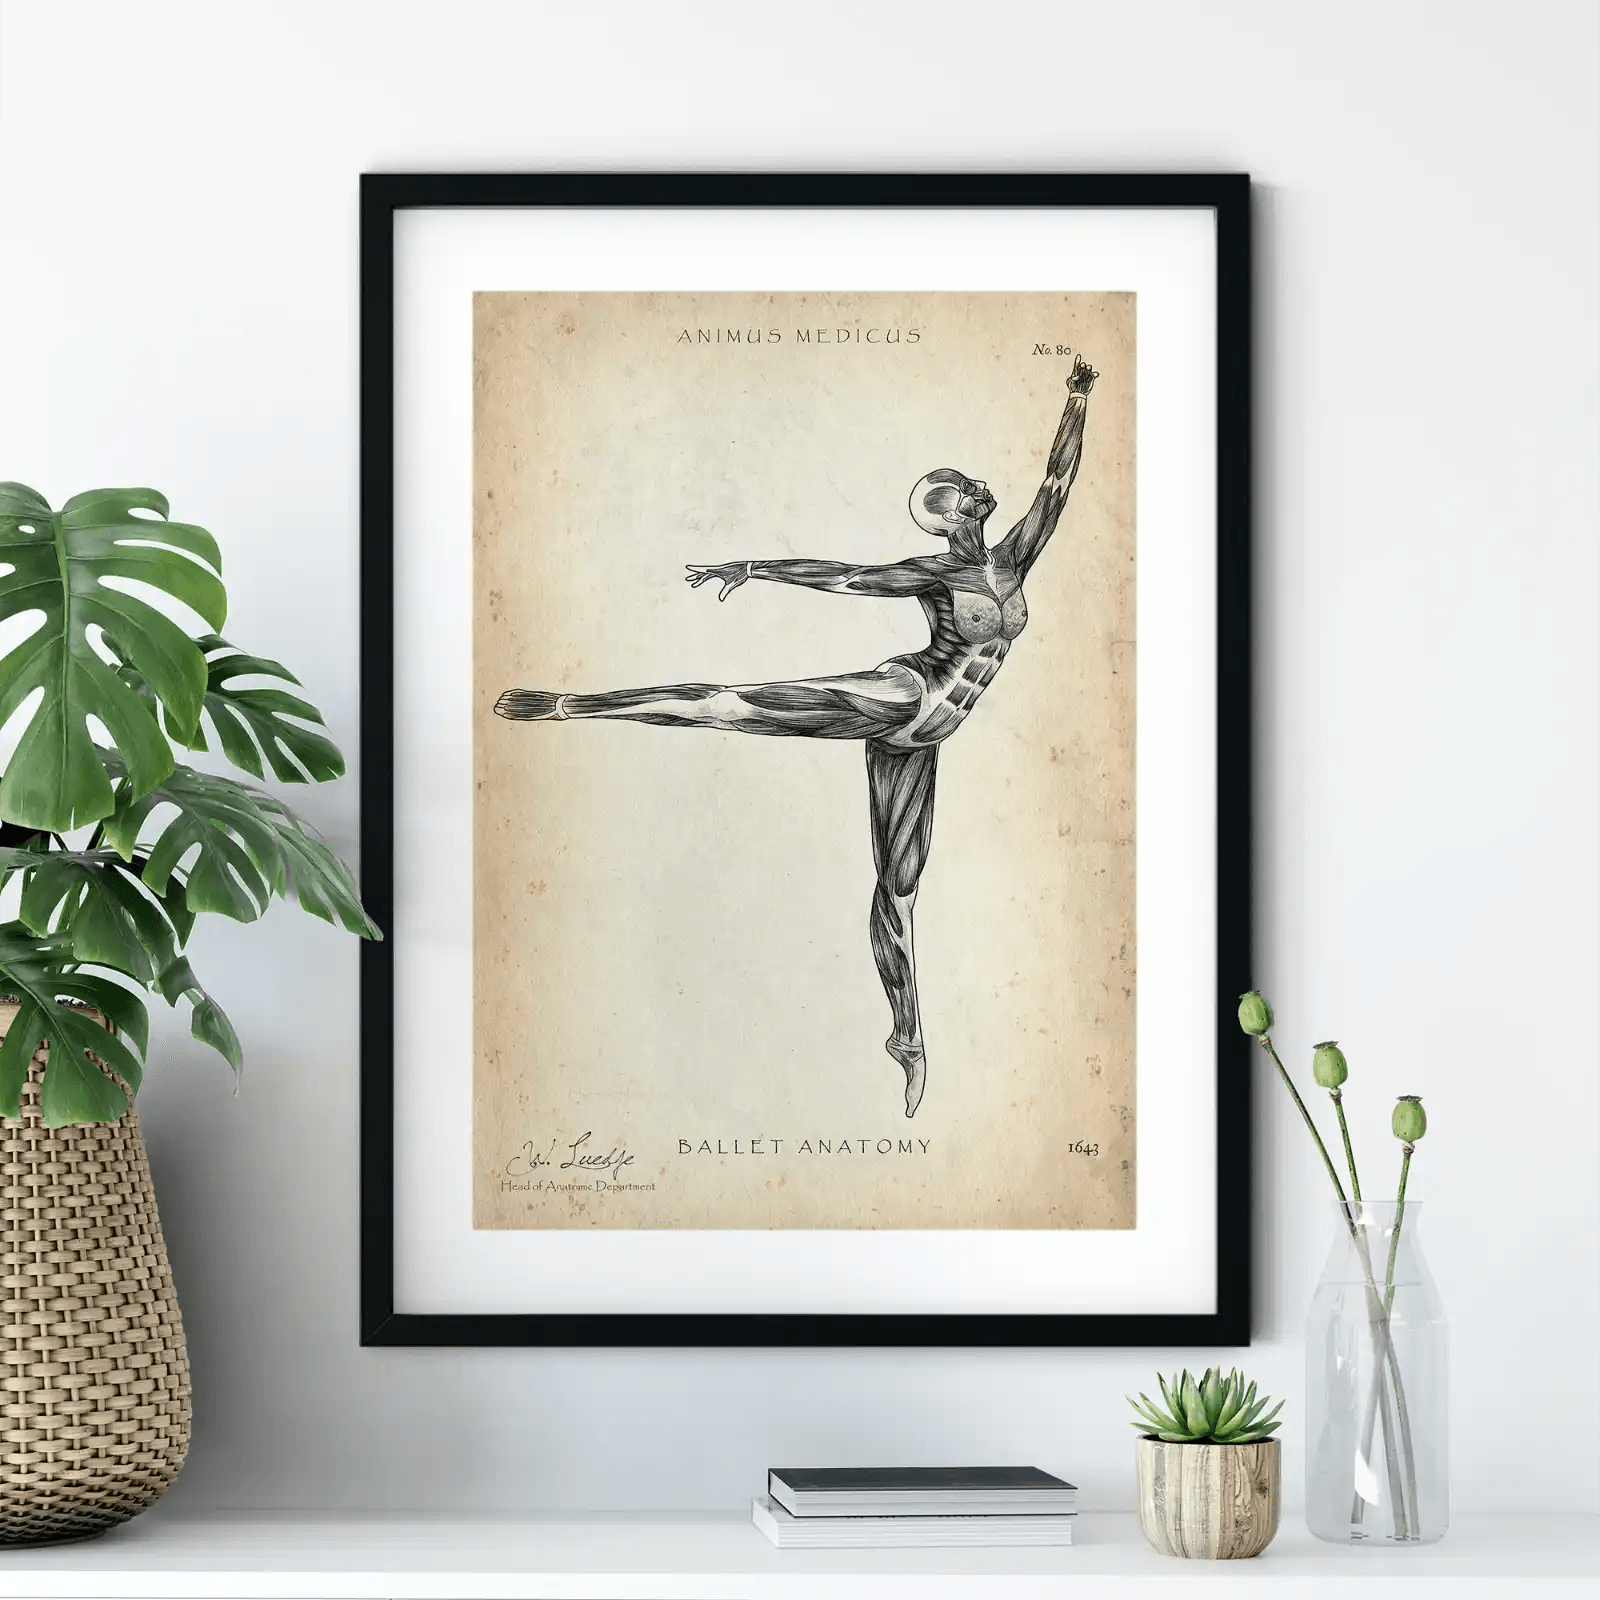 Ballett Anatomie Poster - Animus Medicus GmbH